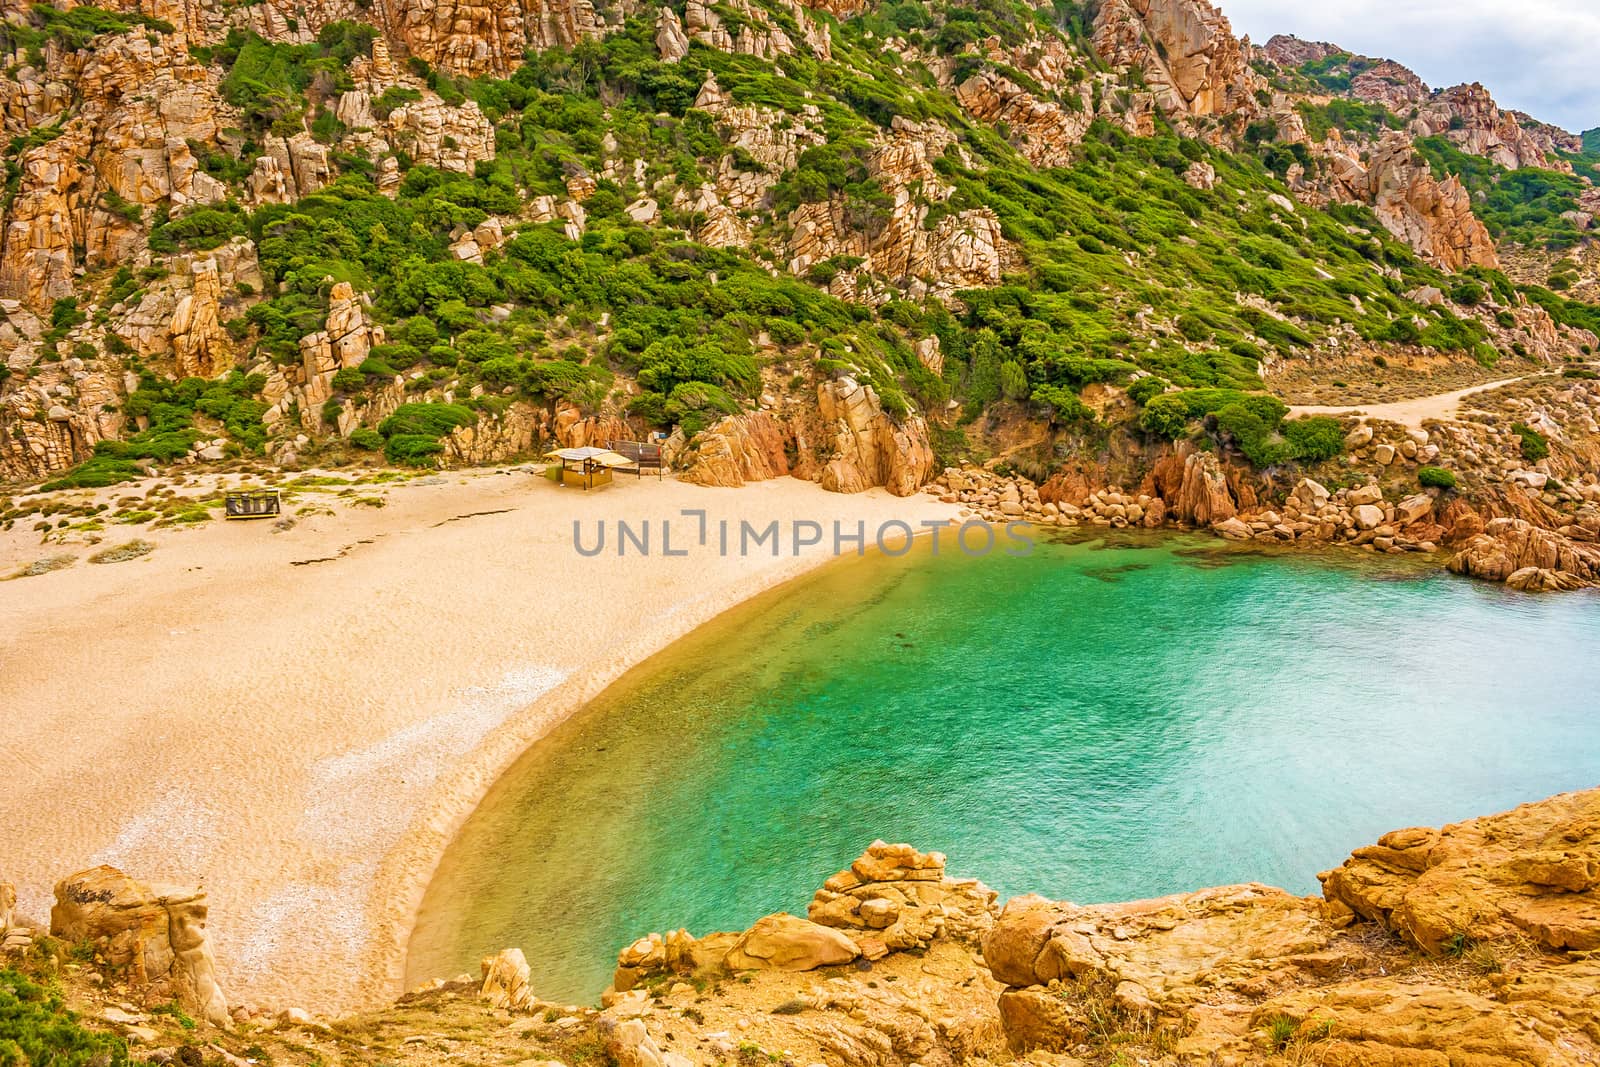 Beach Cala Li Cossi, beautiful bay at Costa Paradiso, Sardinia